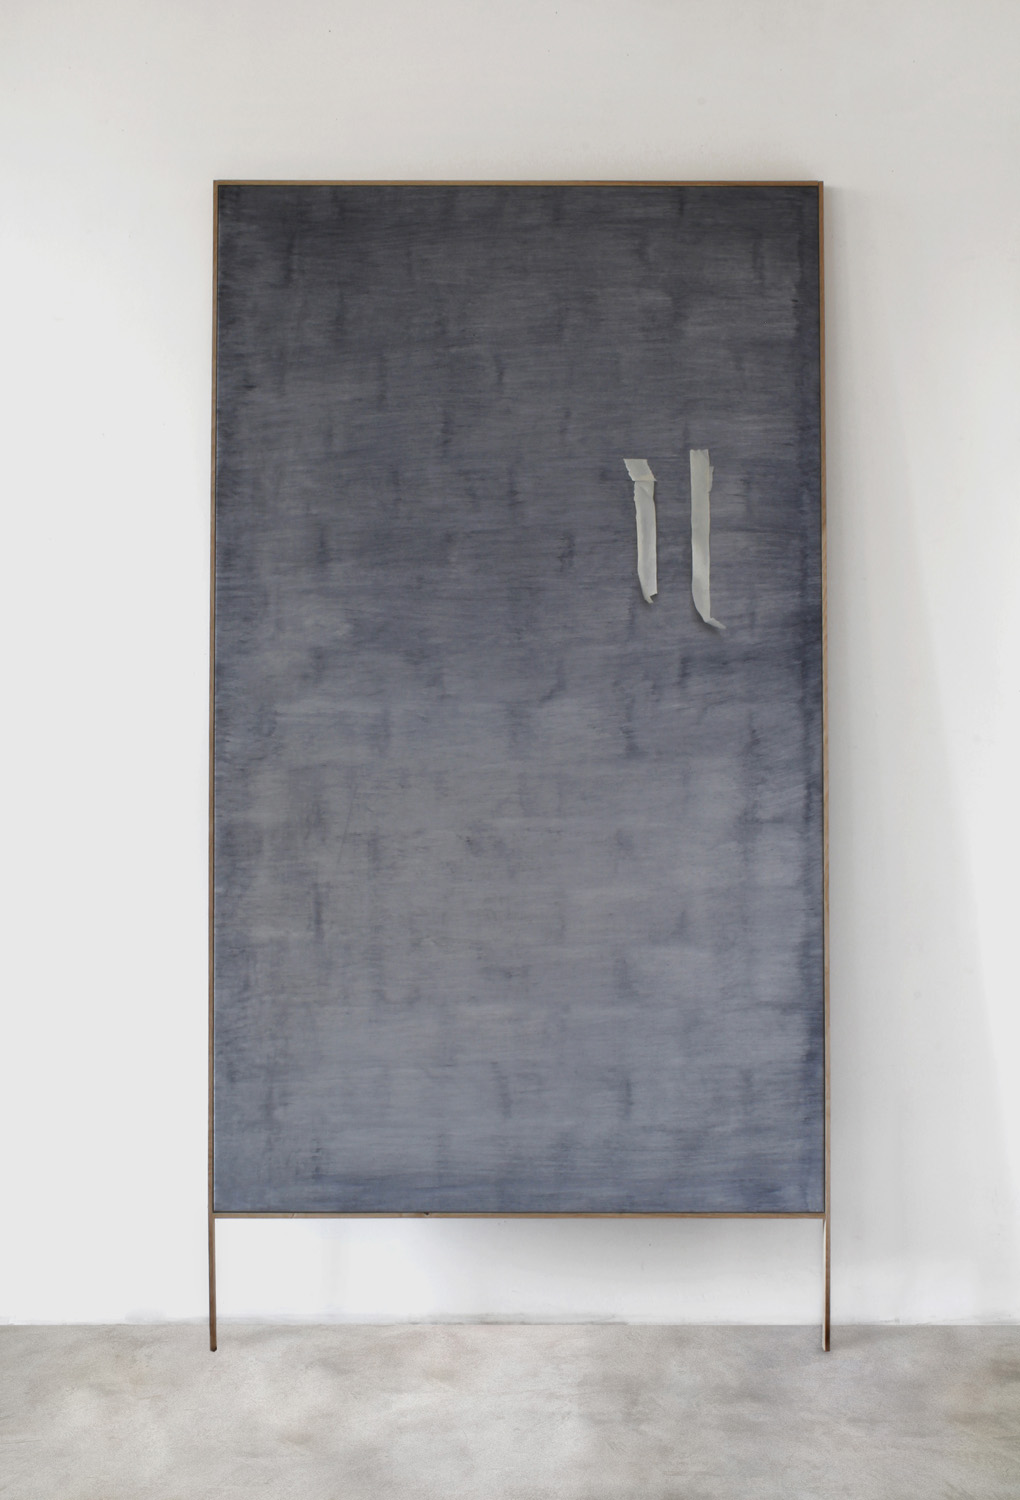 Linda Carrara, Frottage #01, 2018, olio su tela, cornice di rovere, 160 x 95 cm, courtesy l’artista e Boccanera Gallery, Trento